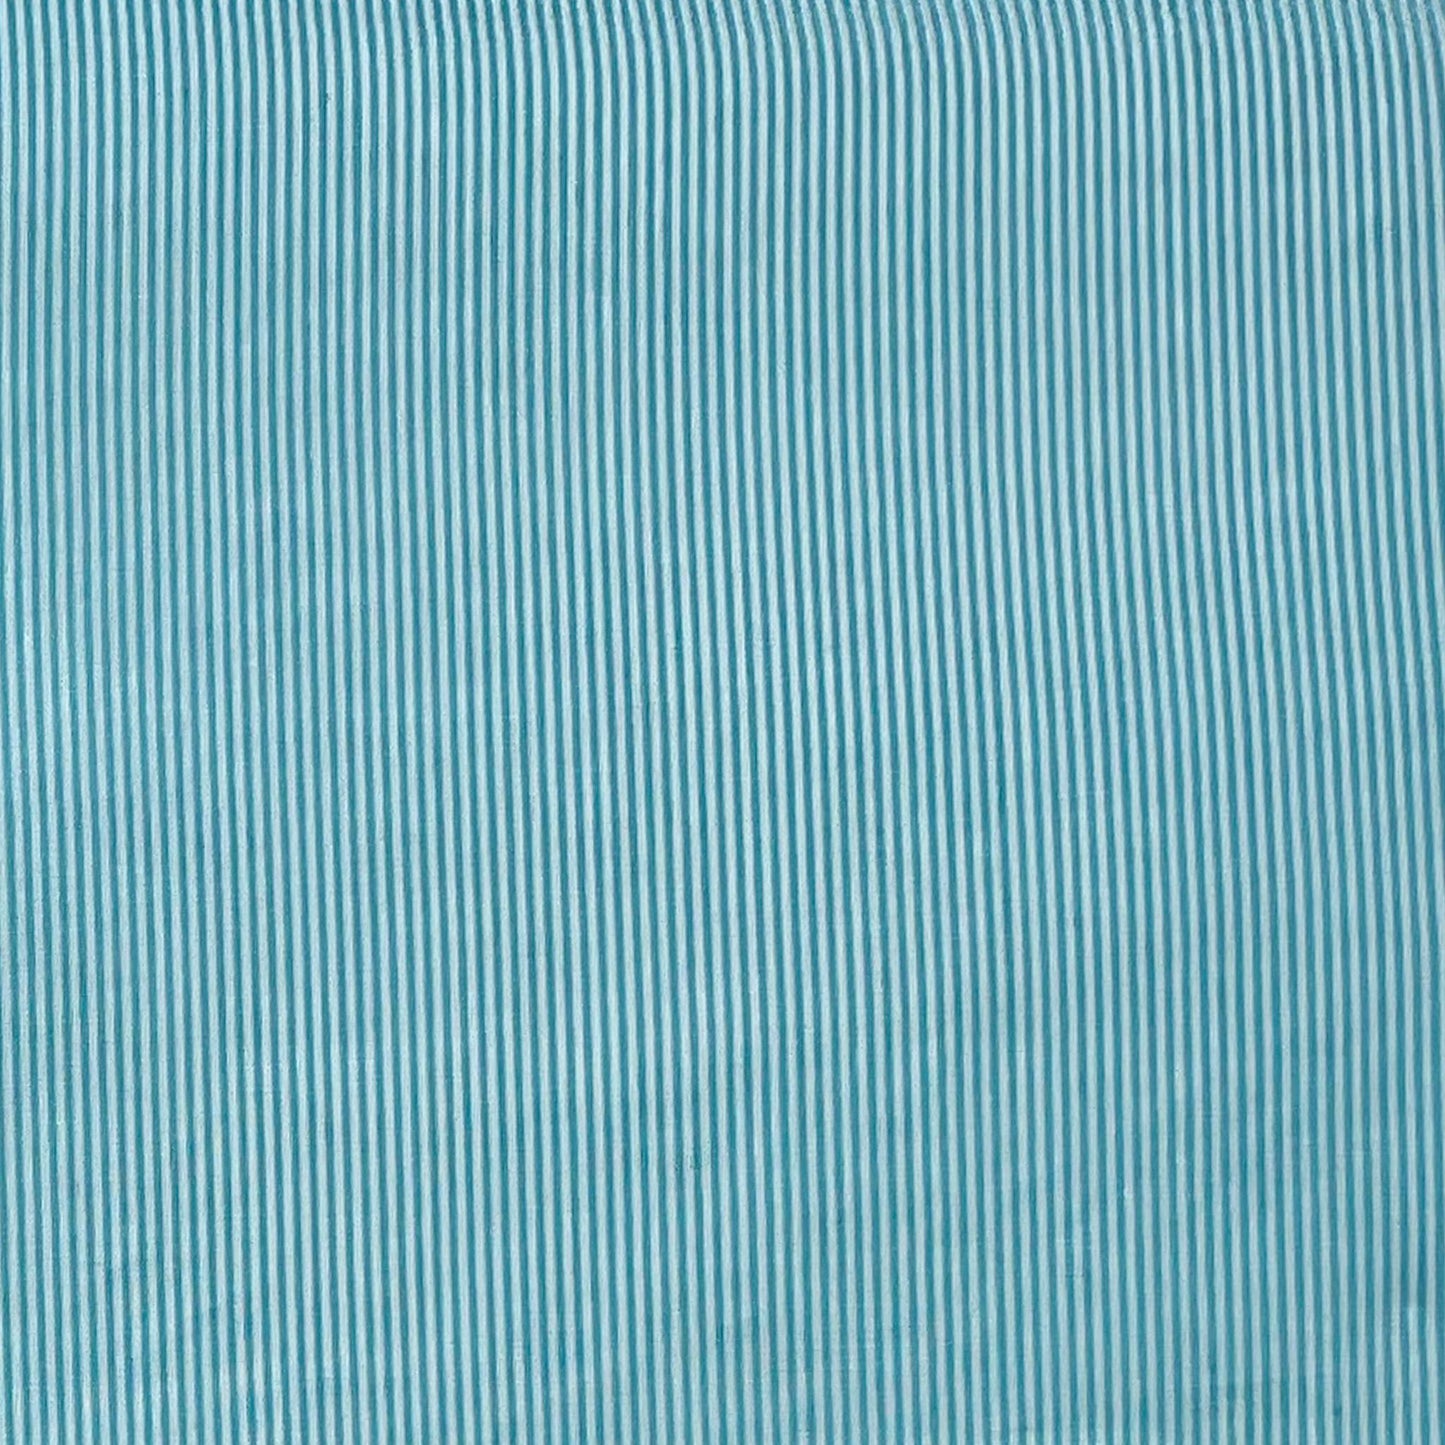 Tessuto millerighe azzurro e bianco